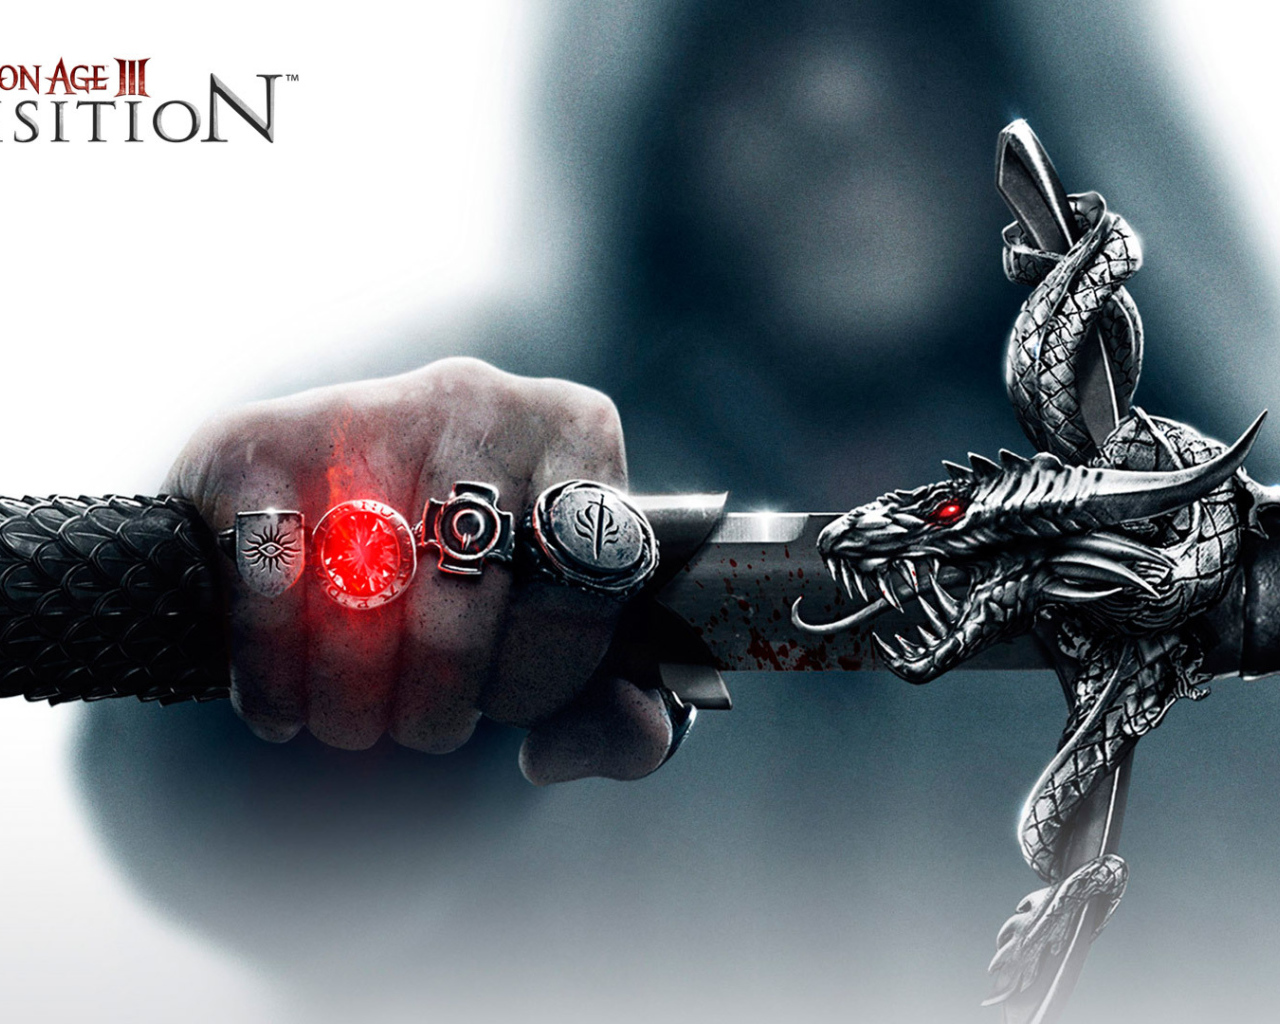 Dragon Age Inquisition: Меч дракона